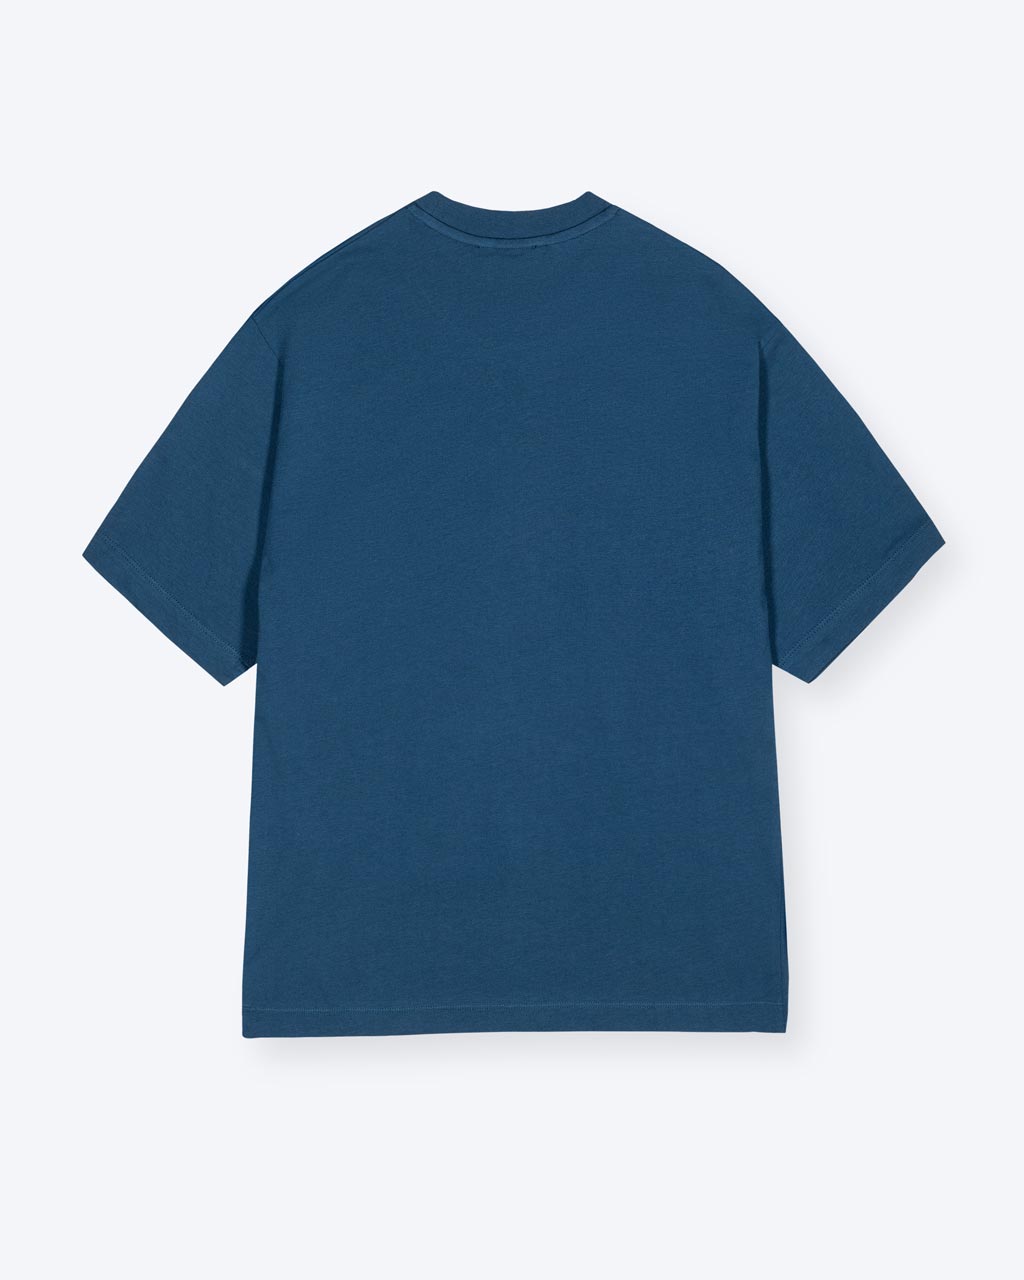 Ein blaues T-Shirt mit nichts auf dem Rücken als Motiv. 